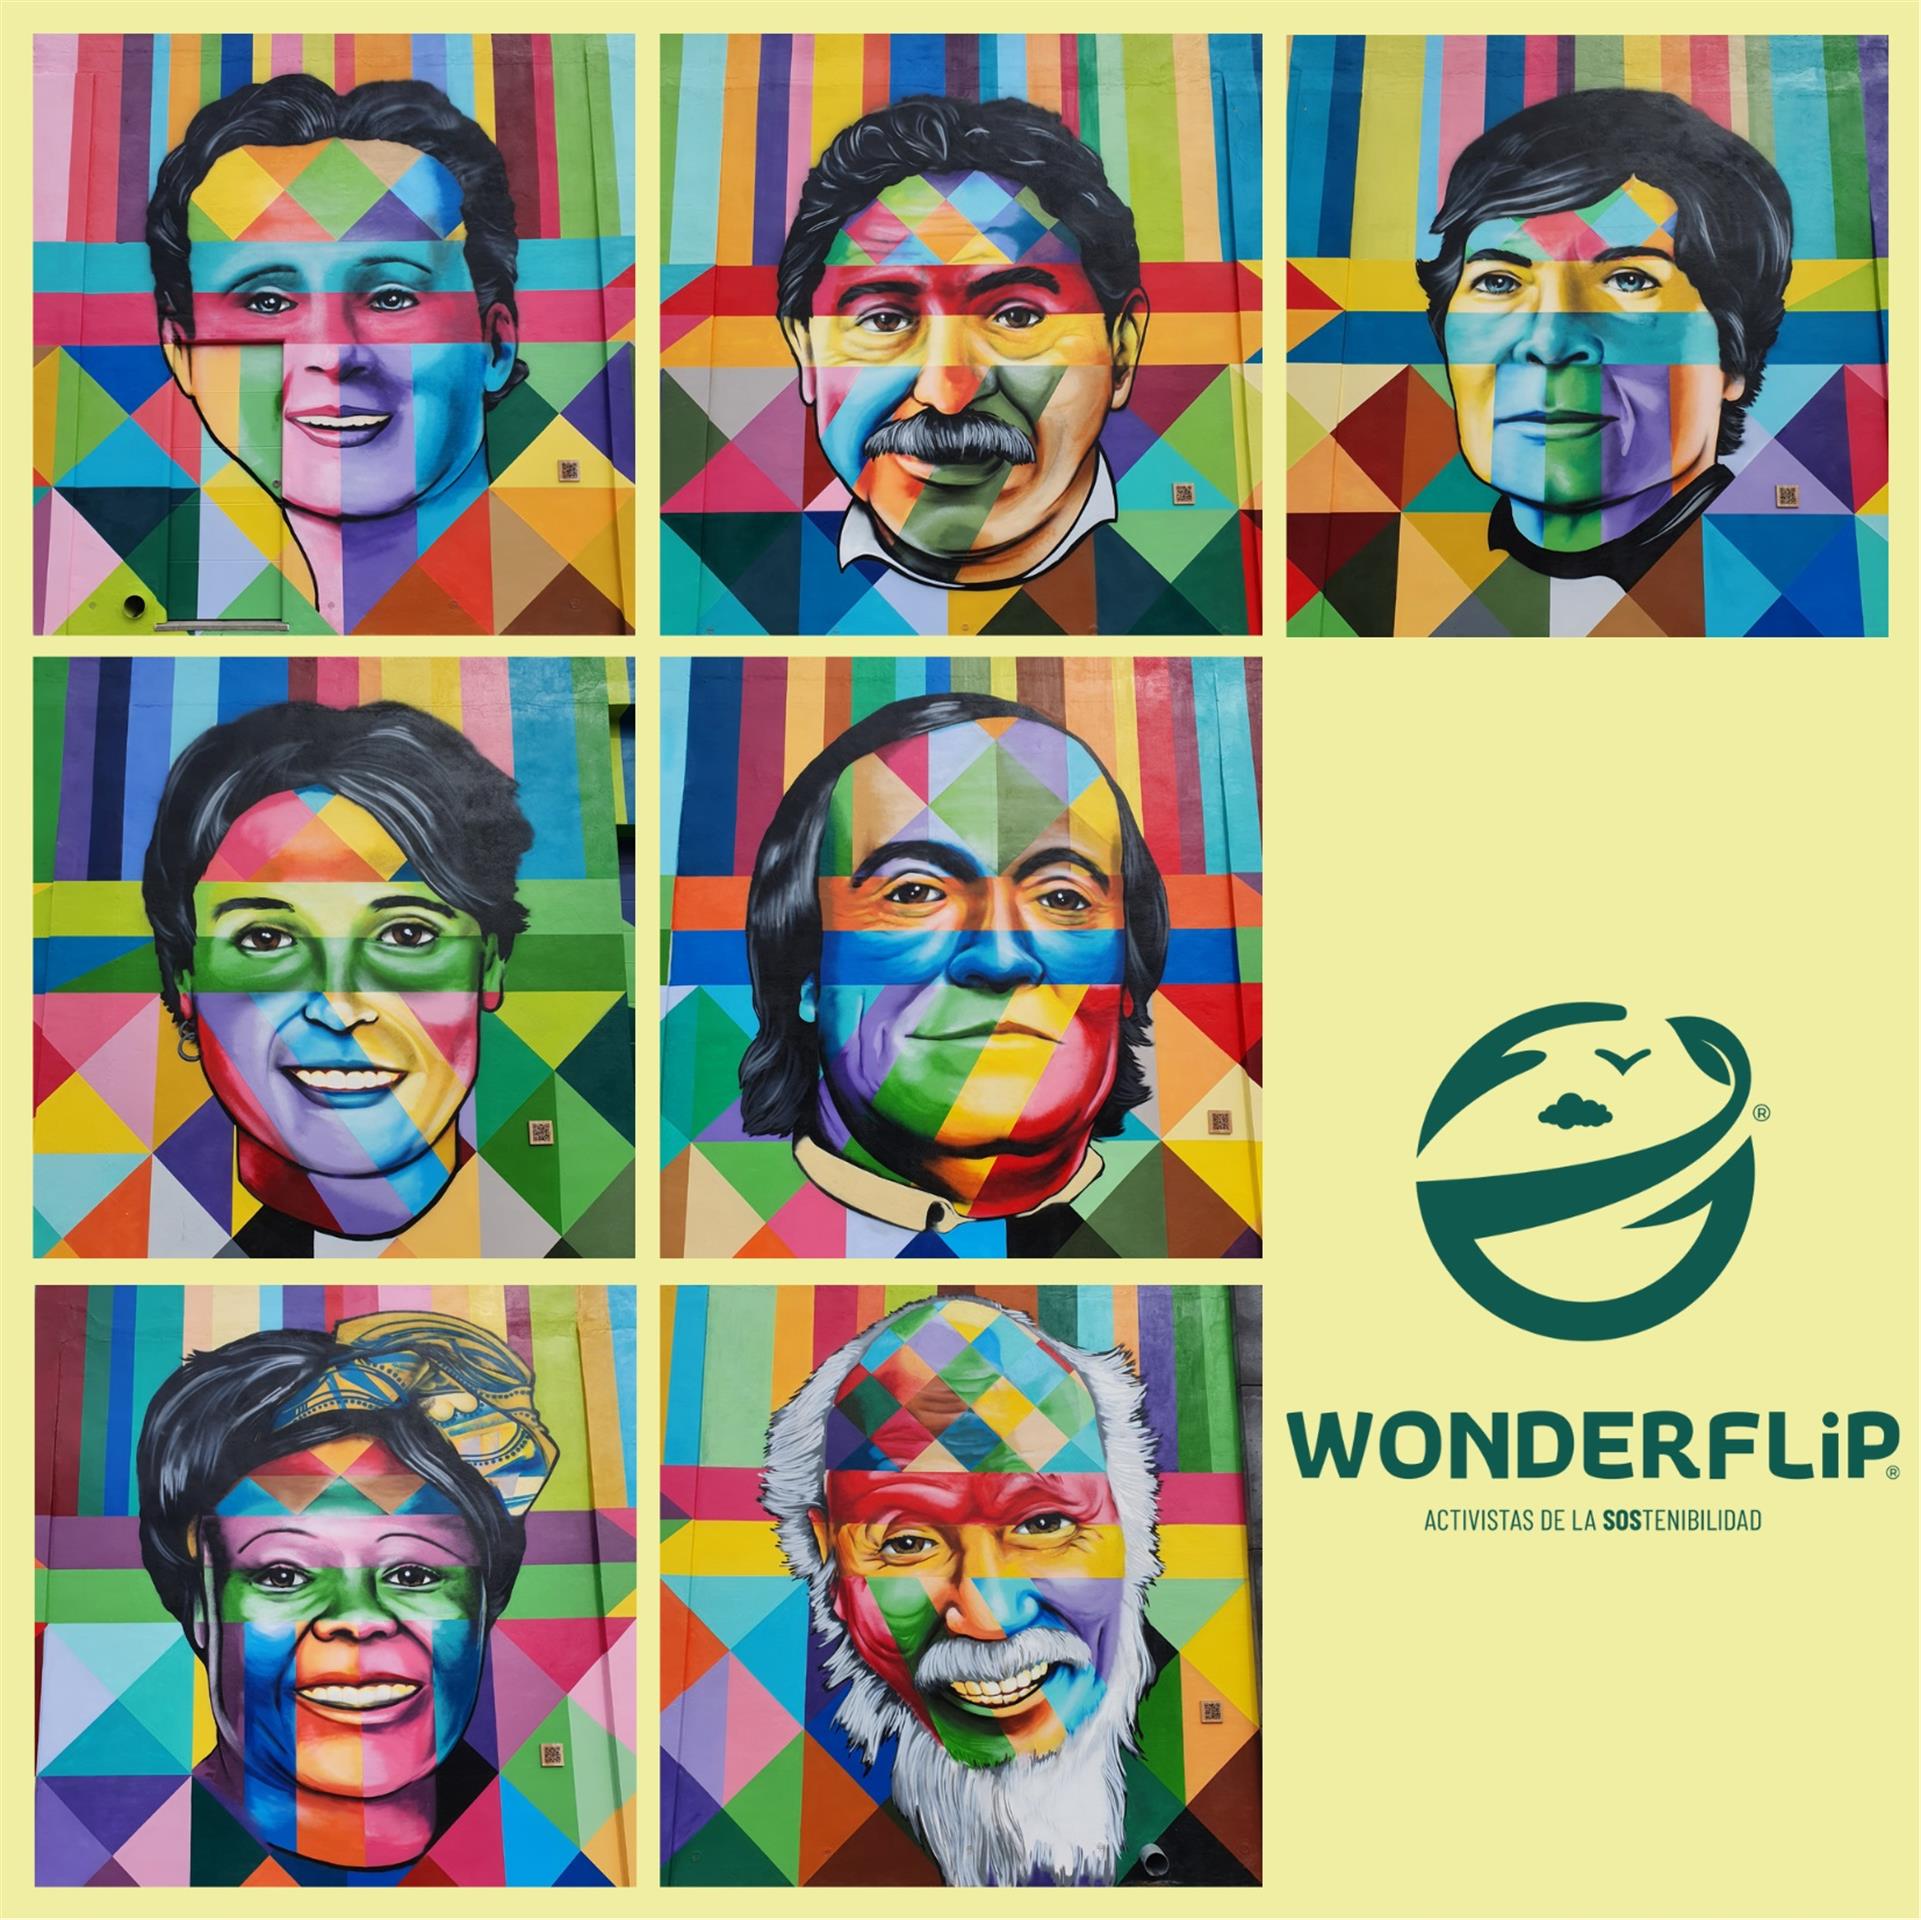 Activistas de la Sostenibilidad. EFE/ Wonderflip